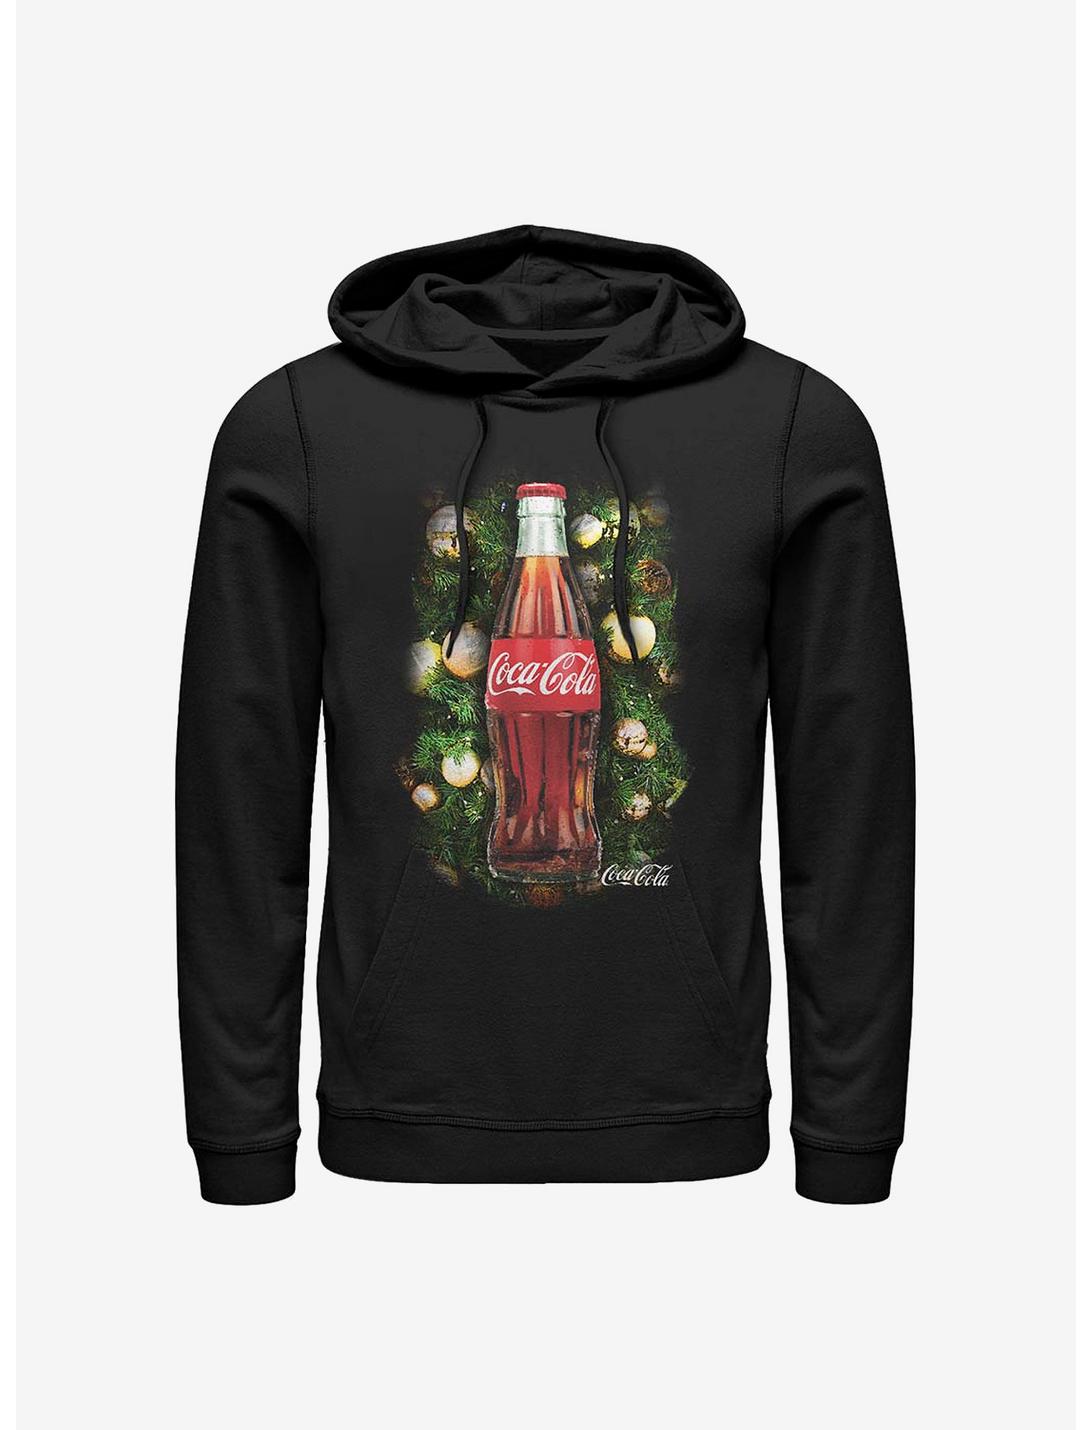 Coke Christmas Blessings Hoodie, BLACK, hi-res